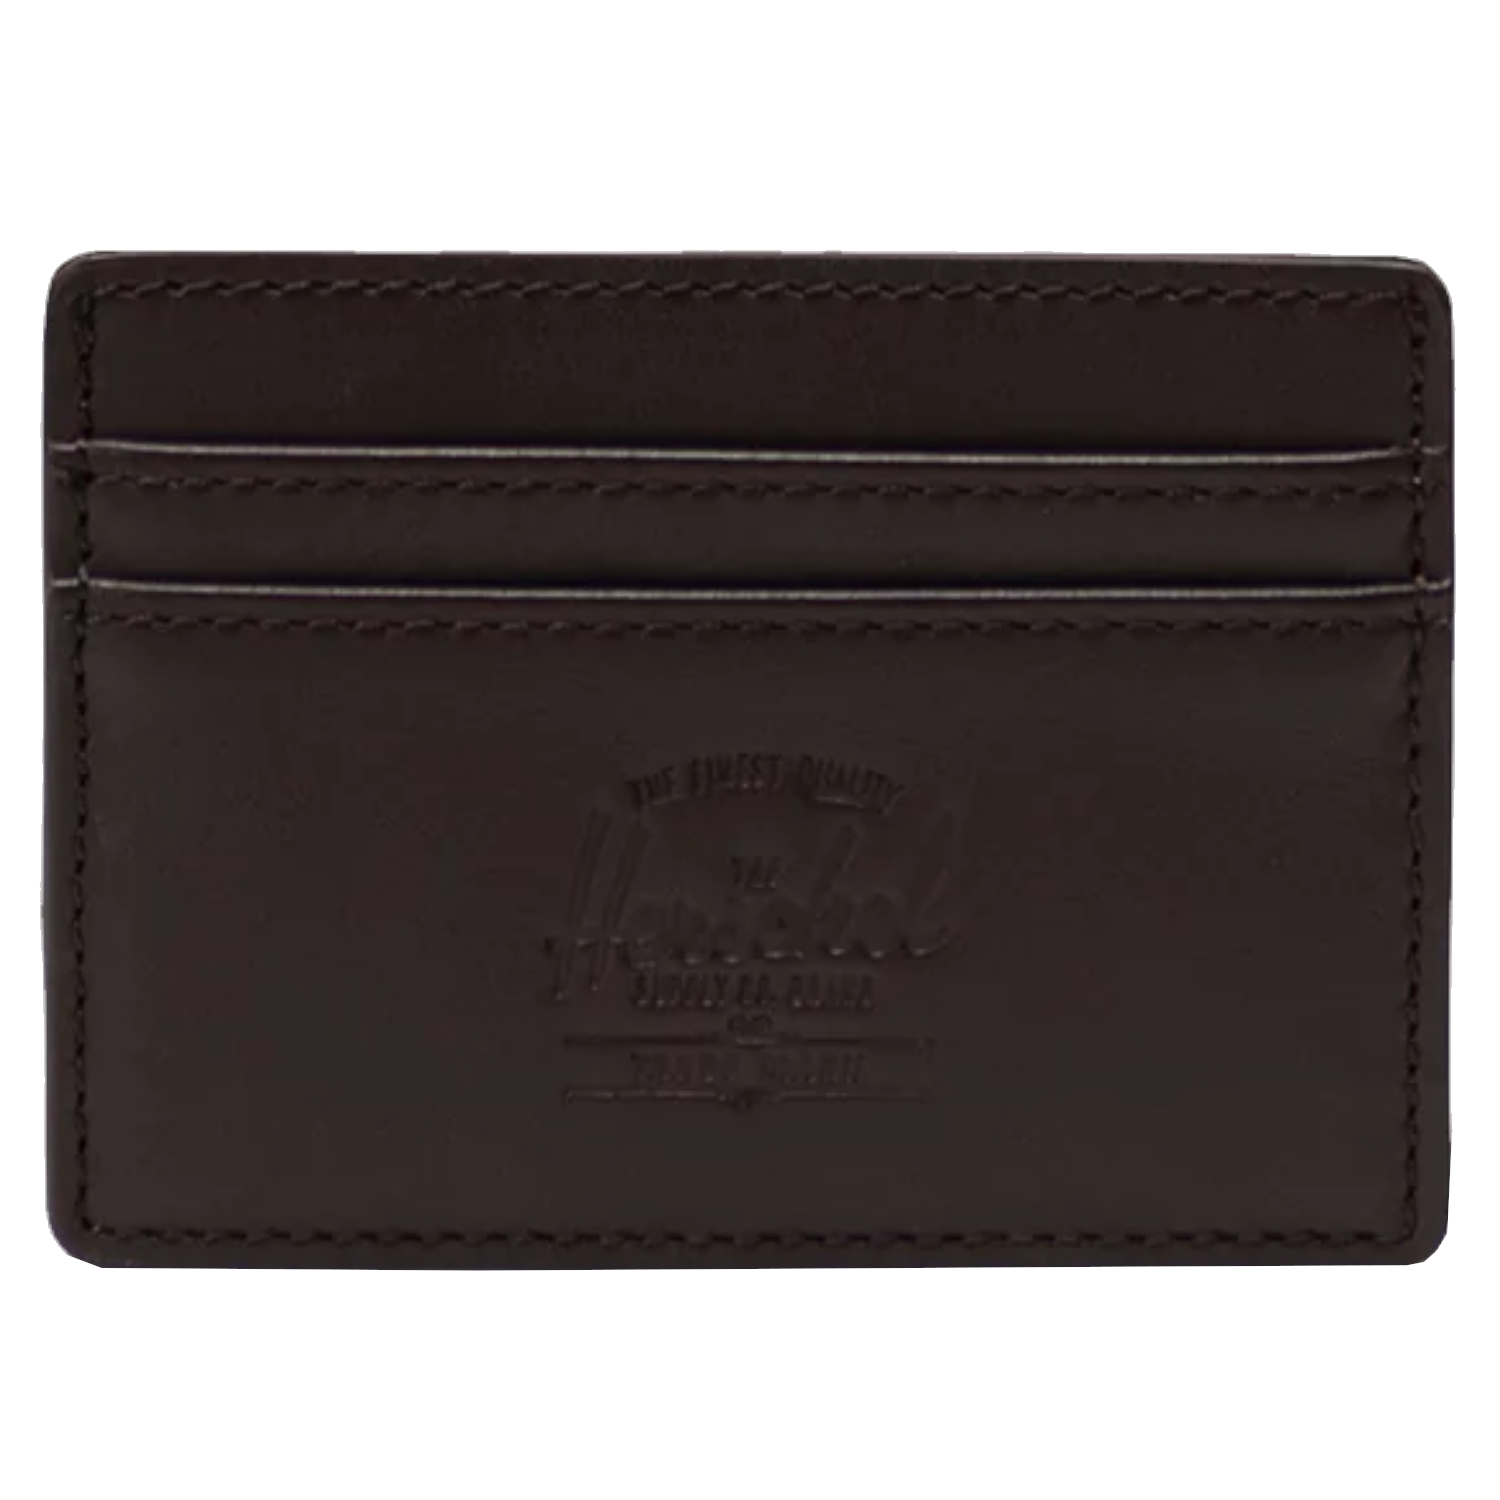 Кошелек Herschel Herschel Charlie Leather RFID Wallet, коричневый